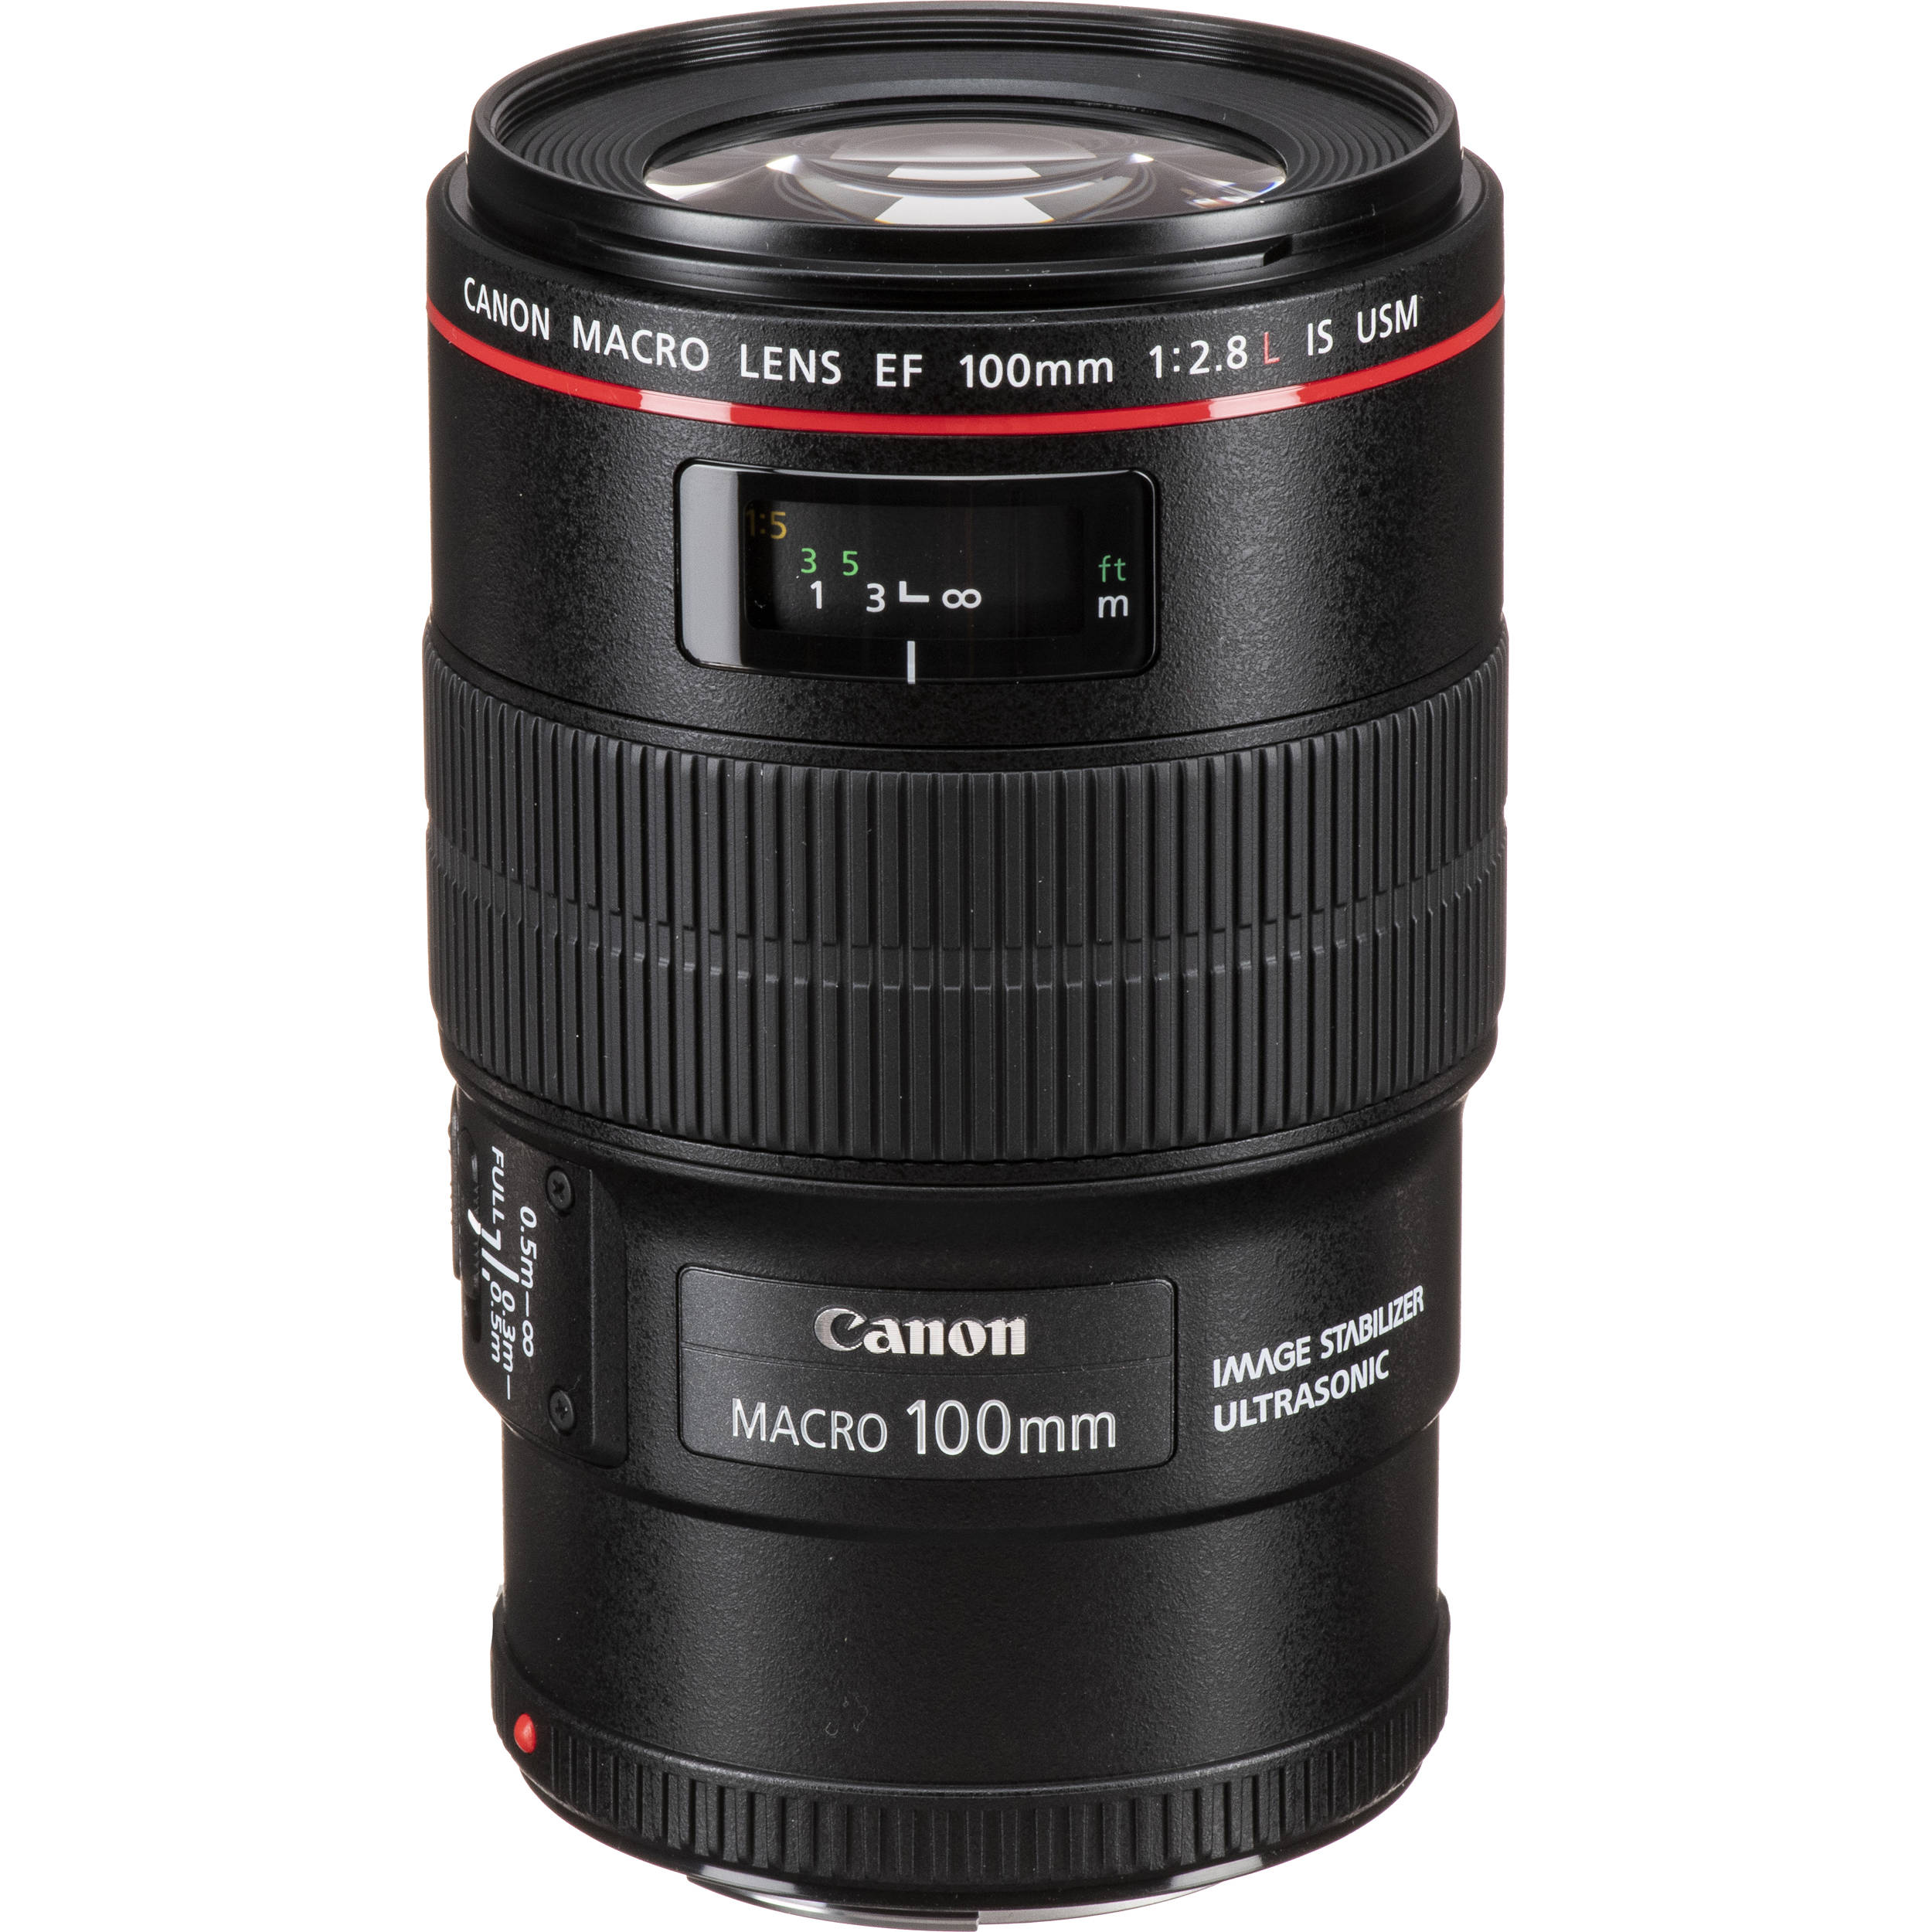 Canon Macro Lens EF 100mm 1:2.8 USM (Lens for Canon DSLR Camera)